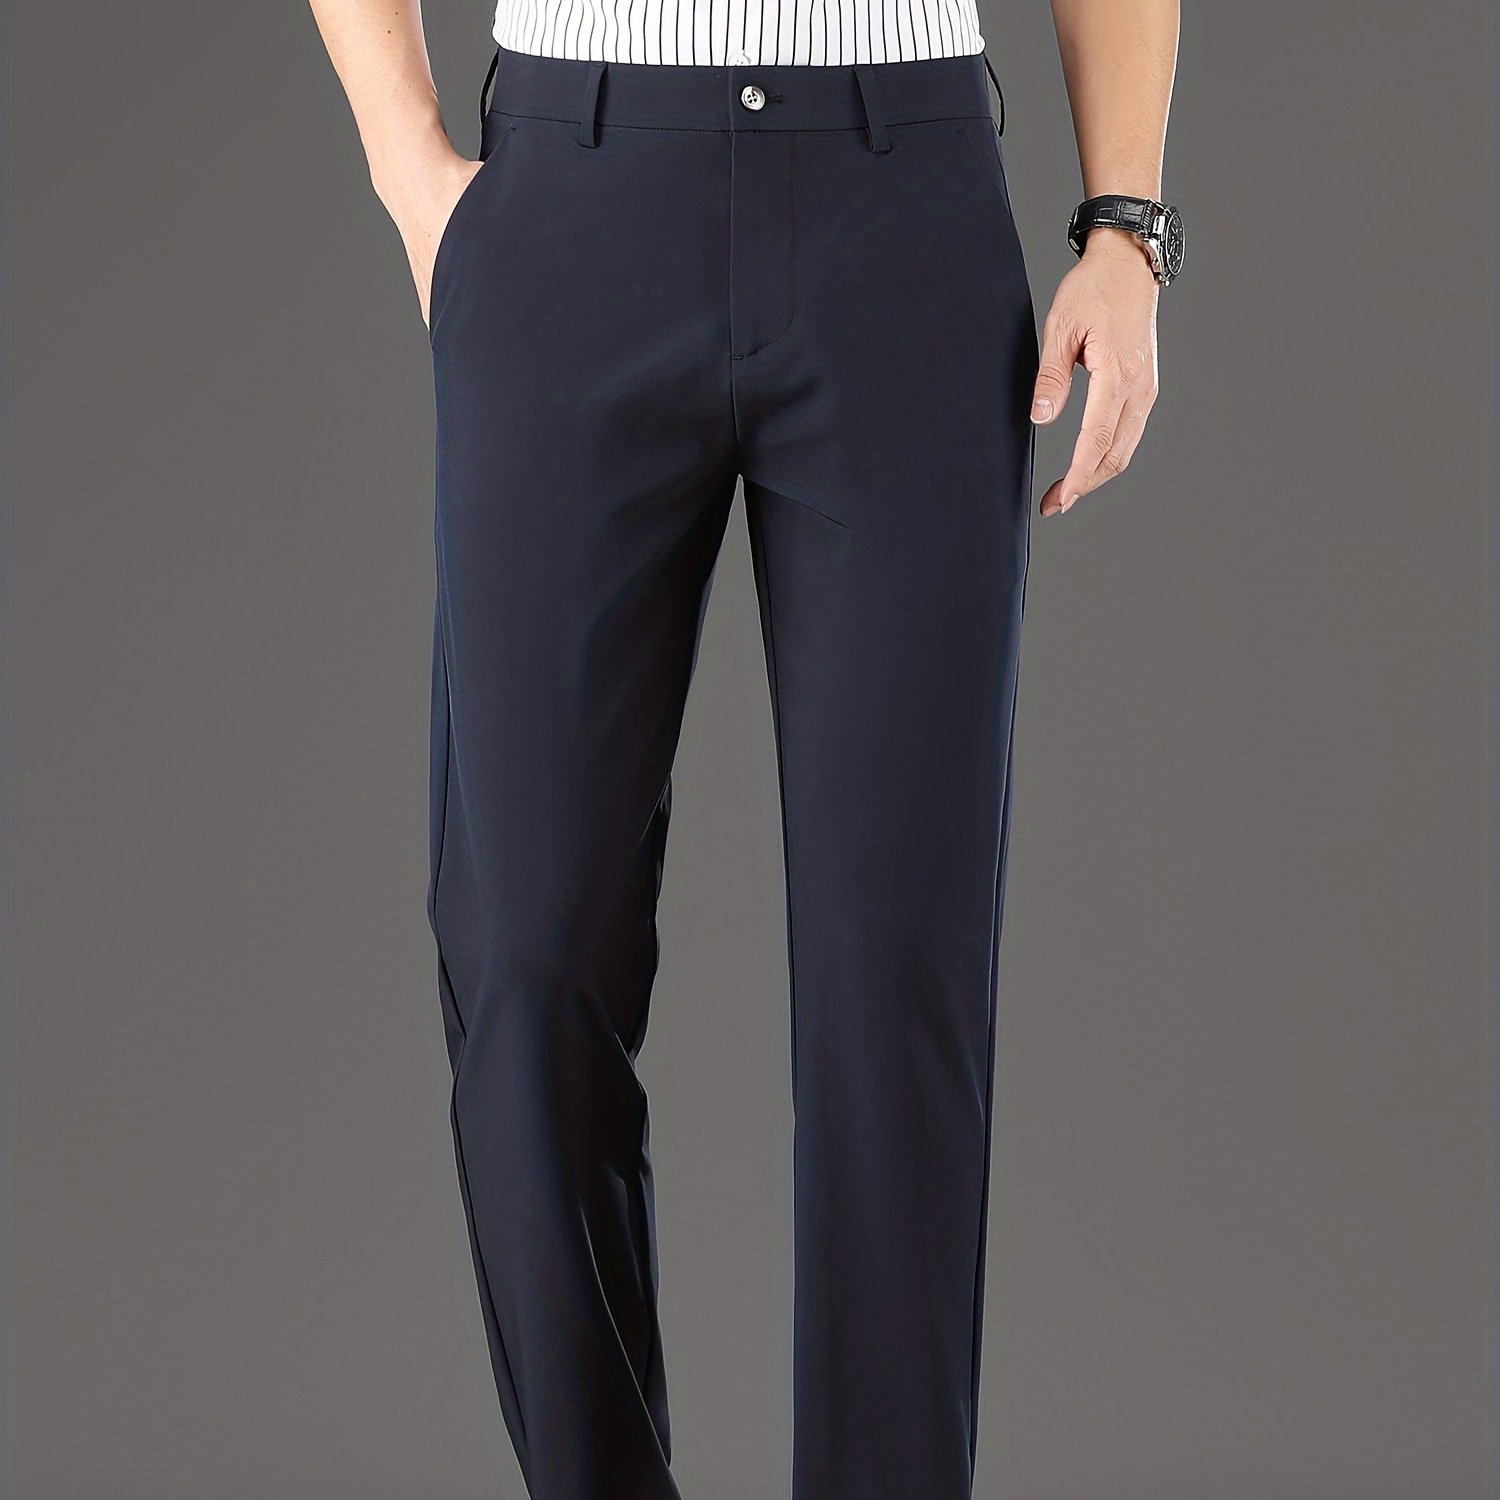 

Light Business Style Men's Solid Elastic Waist Business Slacks, Versatile Draping Trousers For Summer